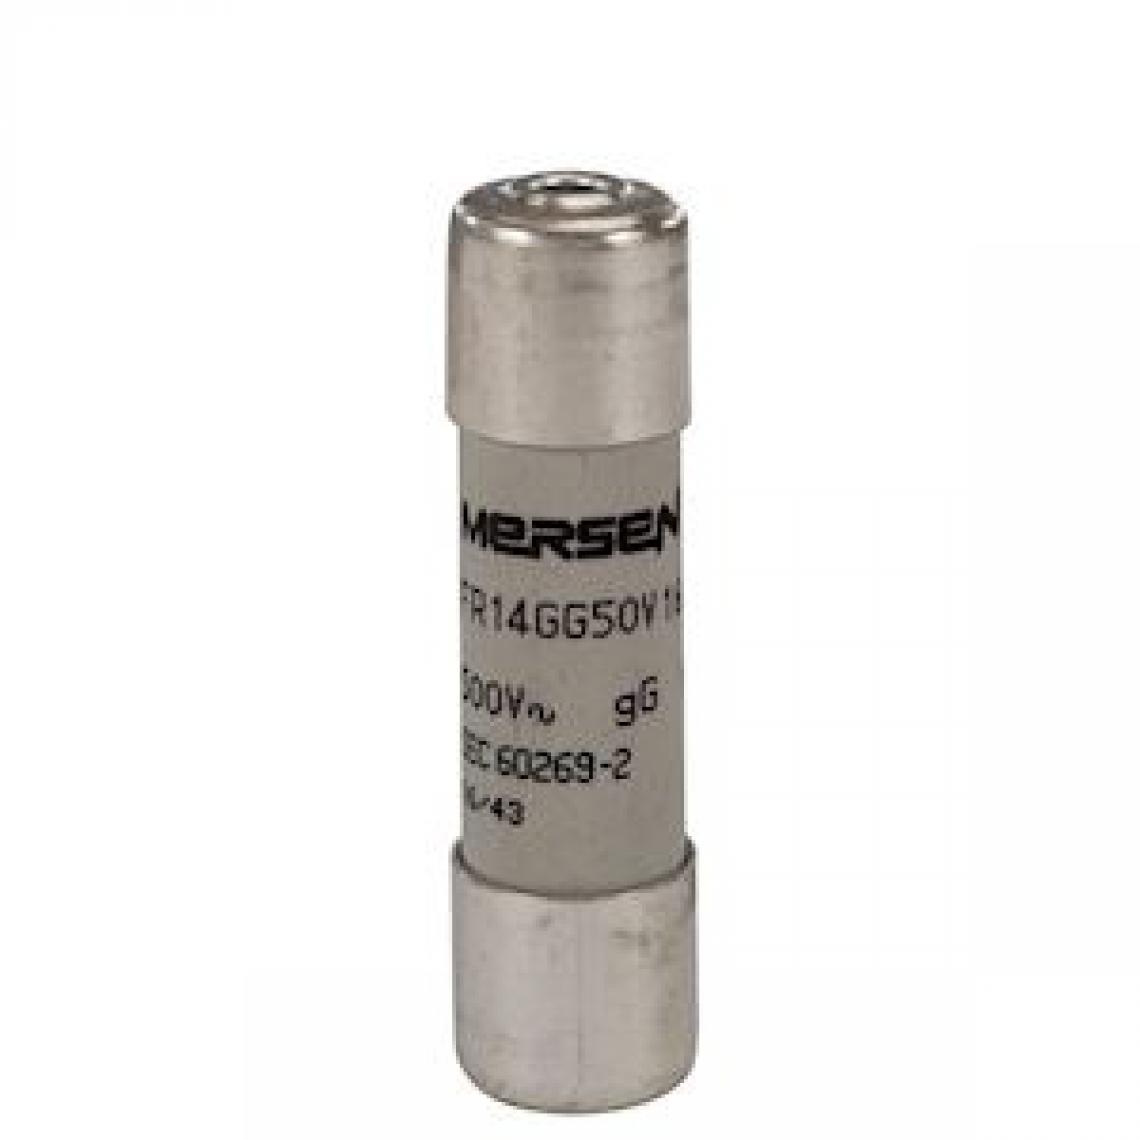 Mersen - fusible cartouche - 14 x 51 - gg - 16a - 500v - avec percuteur - mersen z218200 - Fusibles